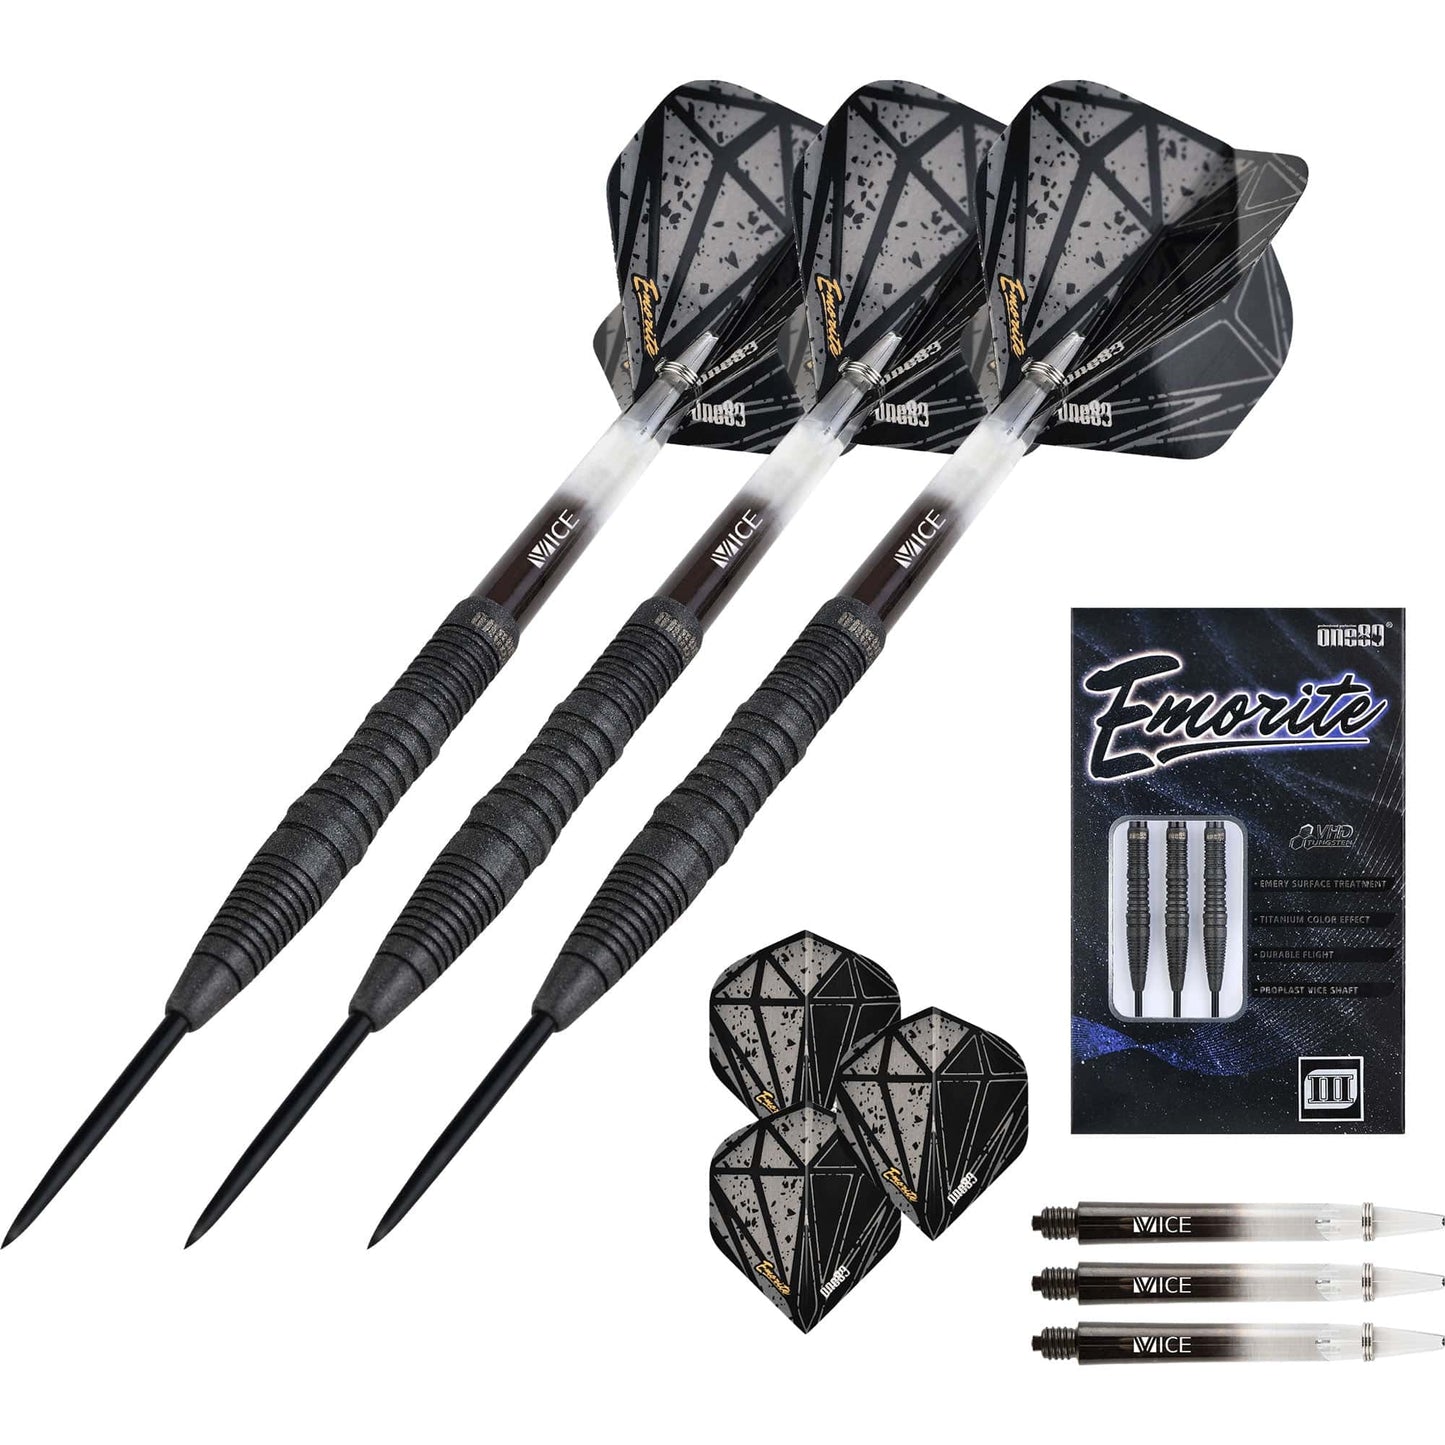 One80 Emorite 03 Darts - Steel Tip - 90% Tungsten - Black